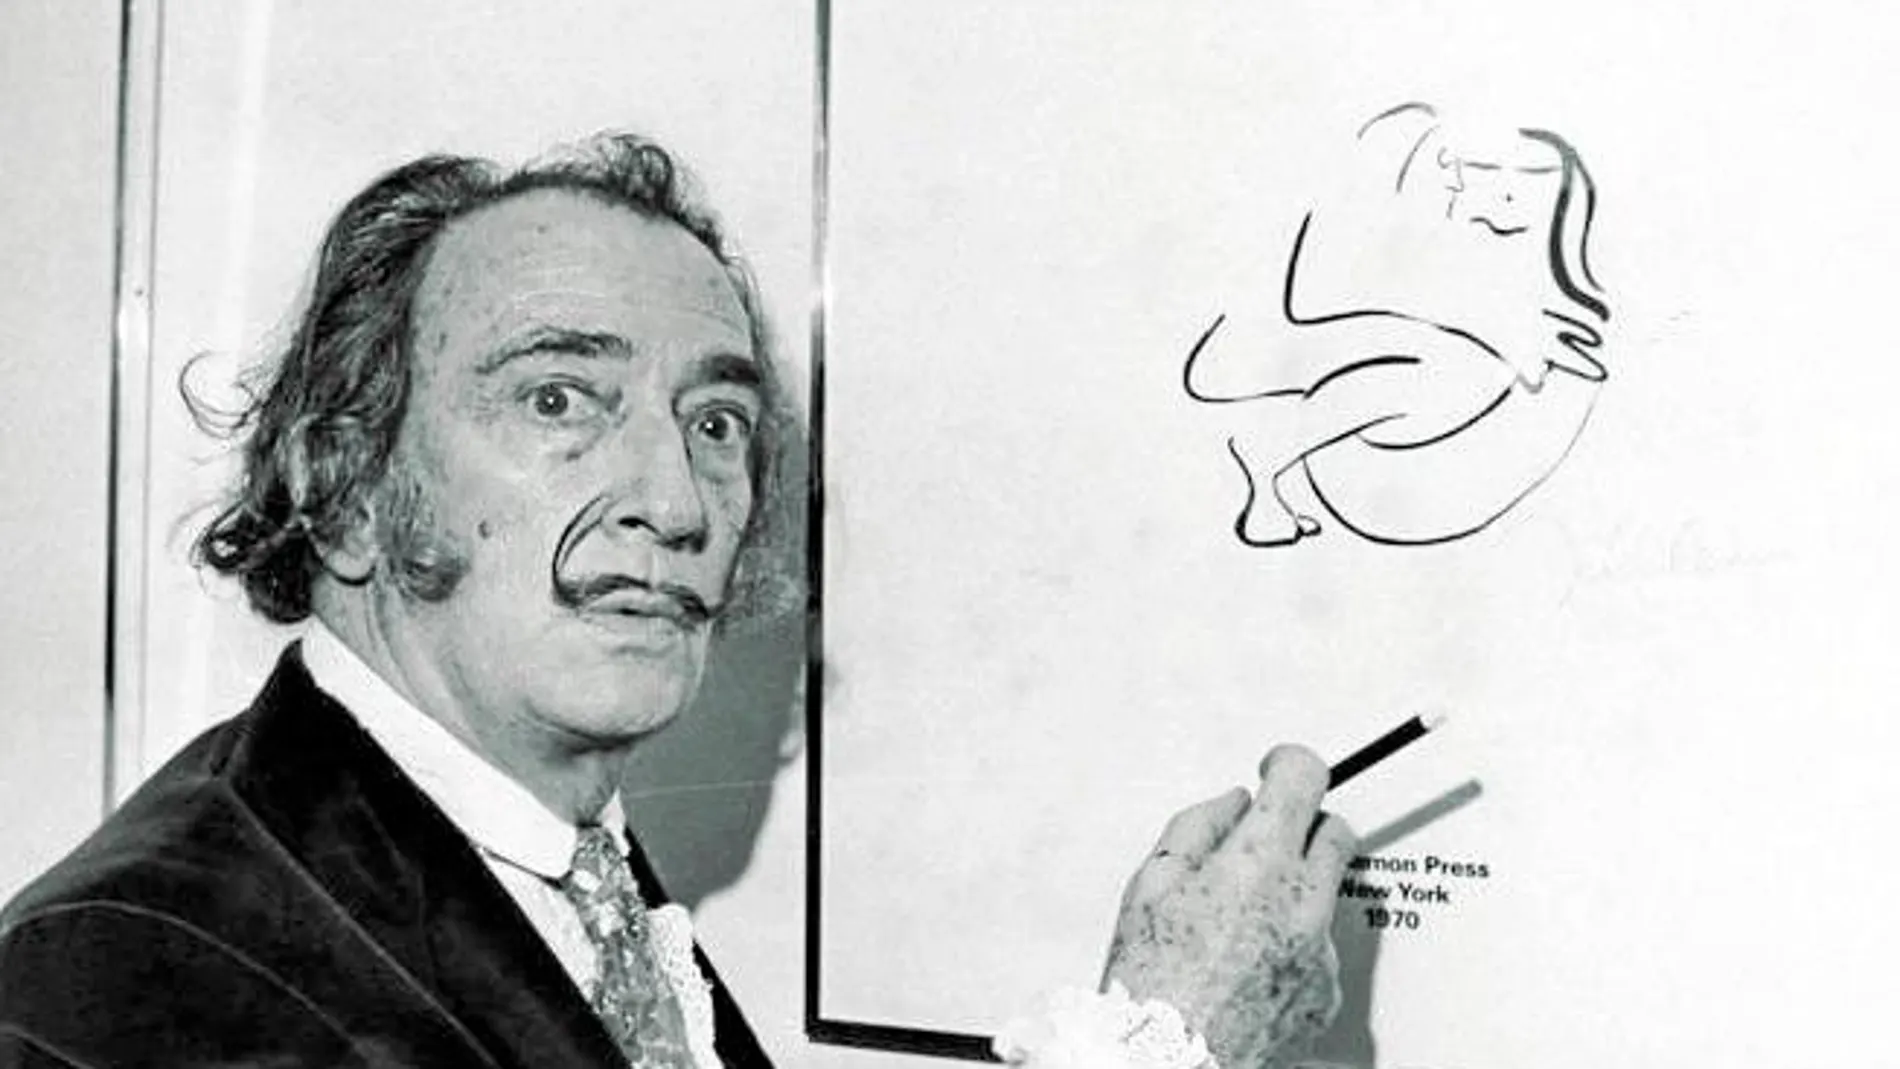 Salvador Dalí junto a una litografía de John Lennon en una exposición del cantante en Nueva York en 1970